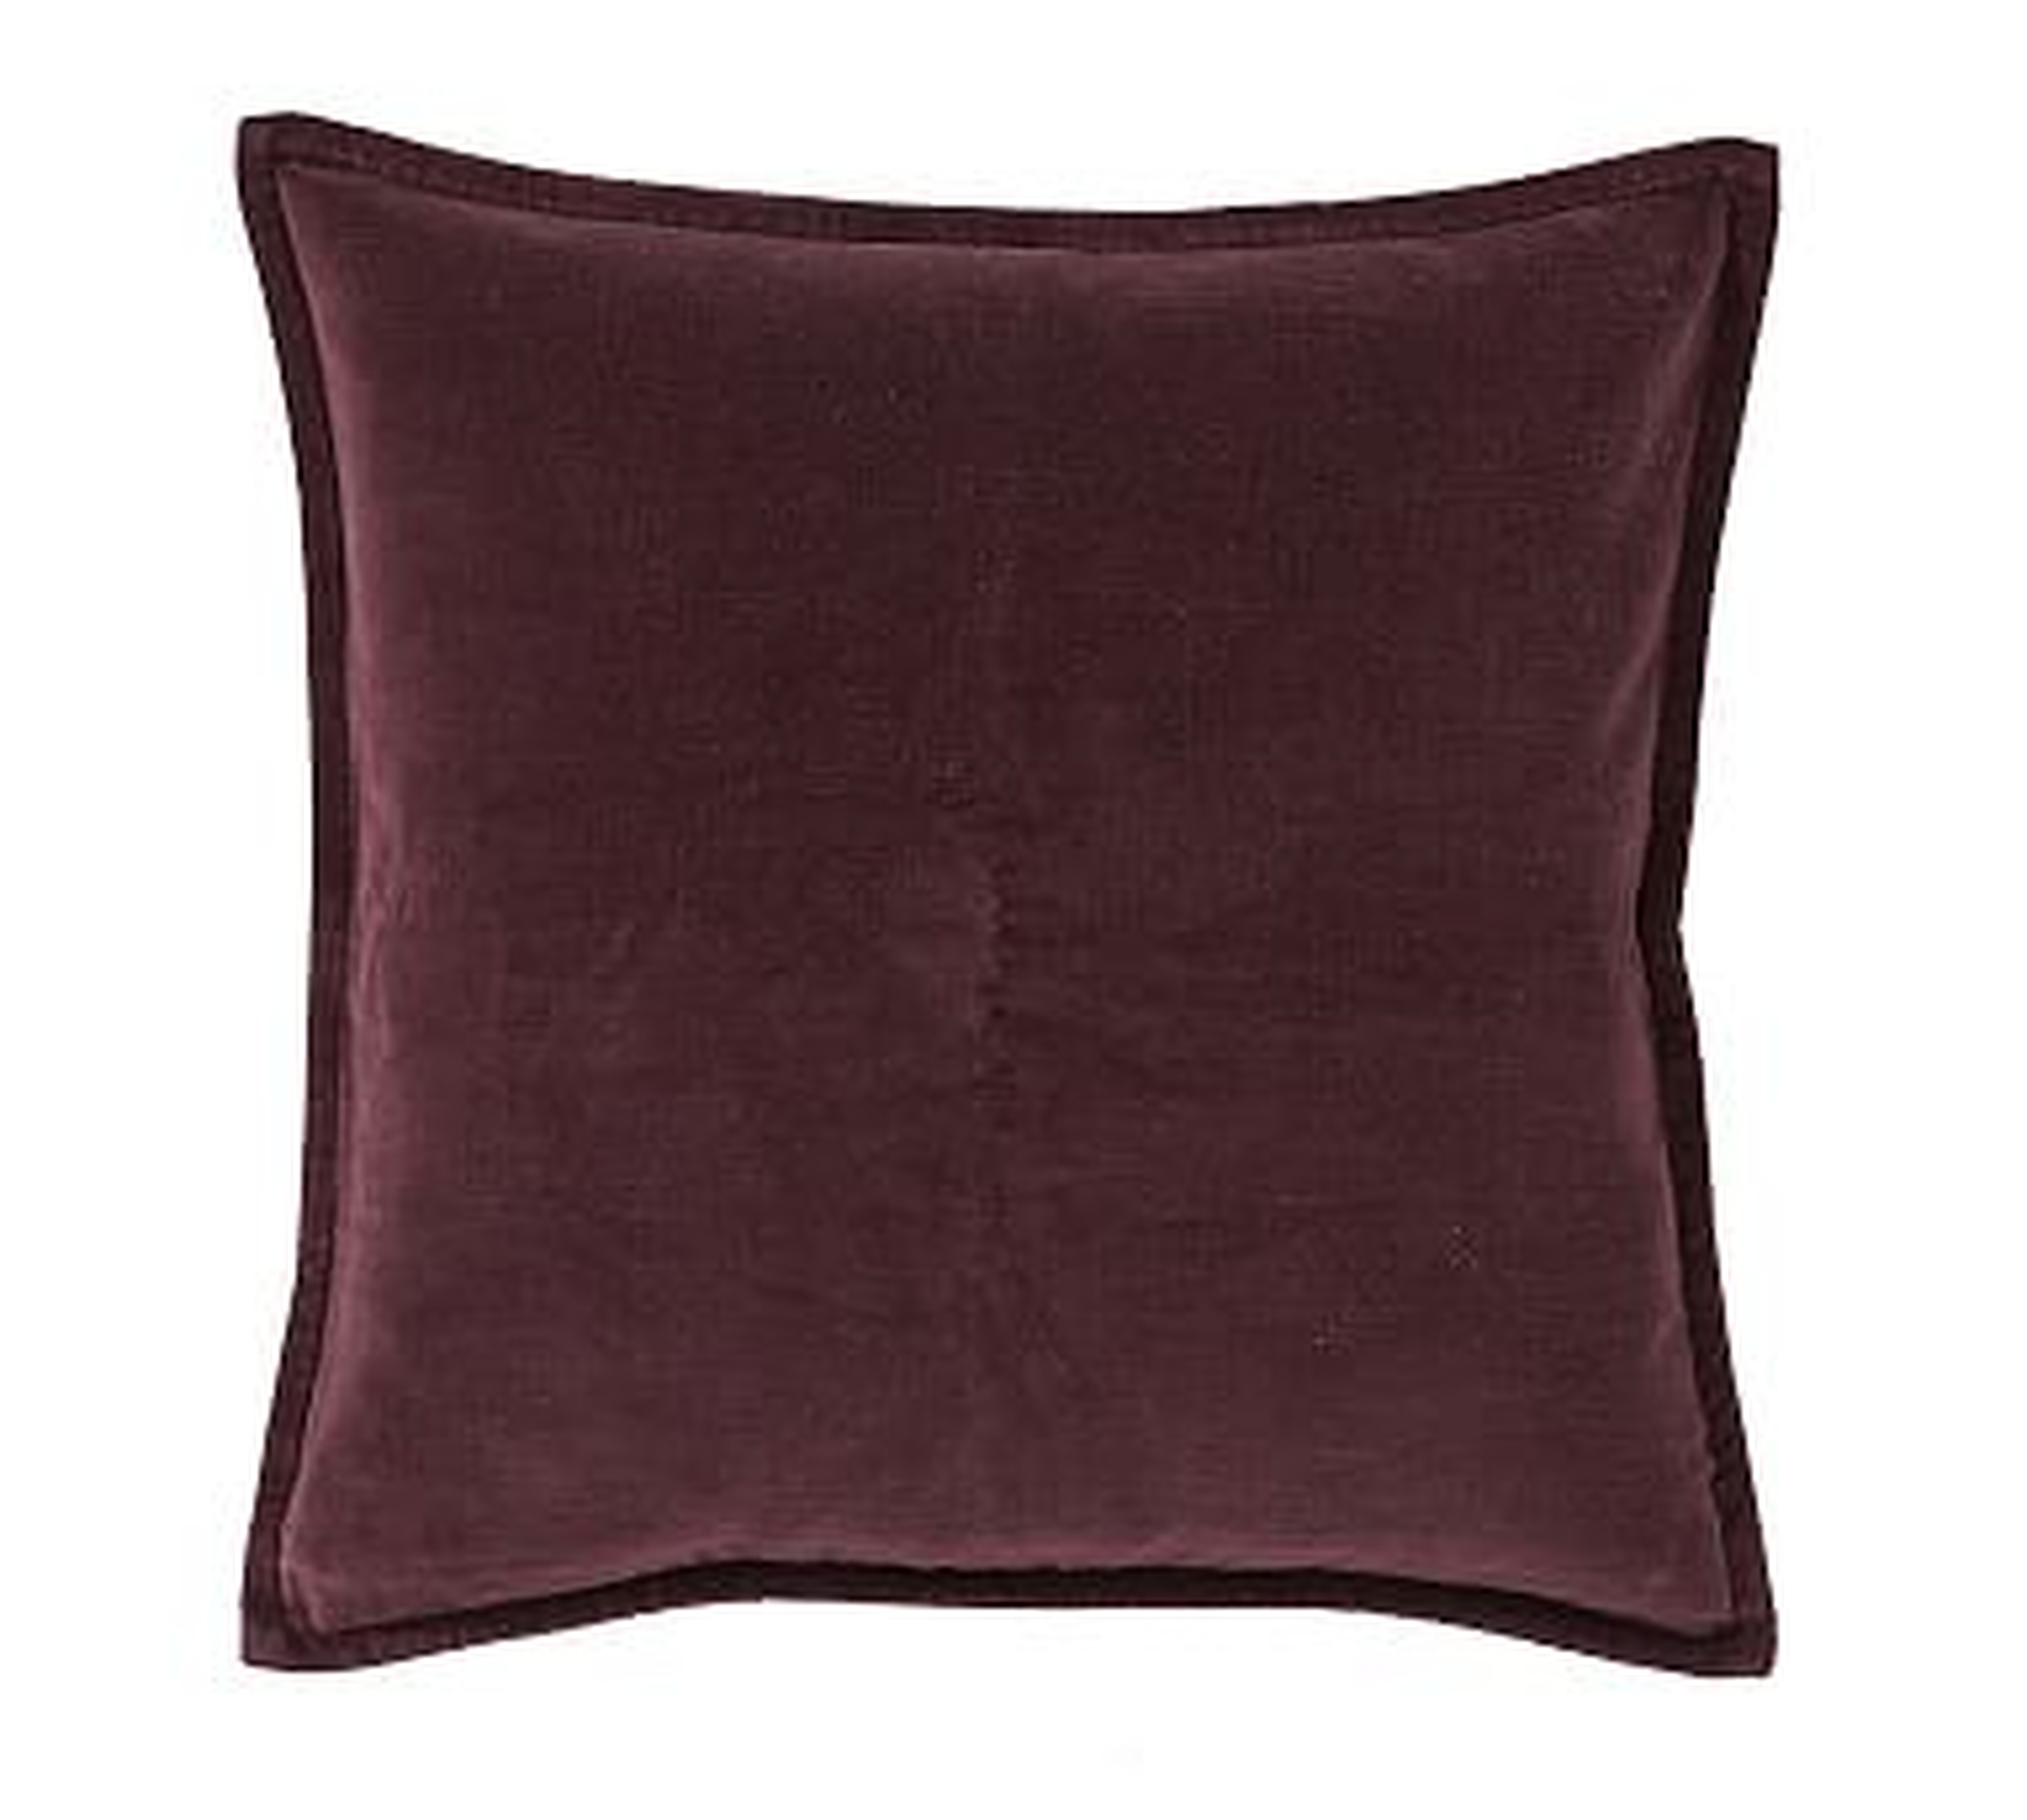 Washed Velvet Pillow Cover, 20", Plum - Pottery Barn